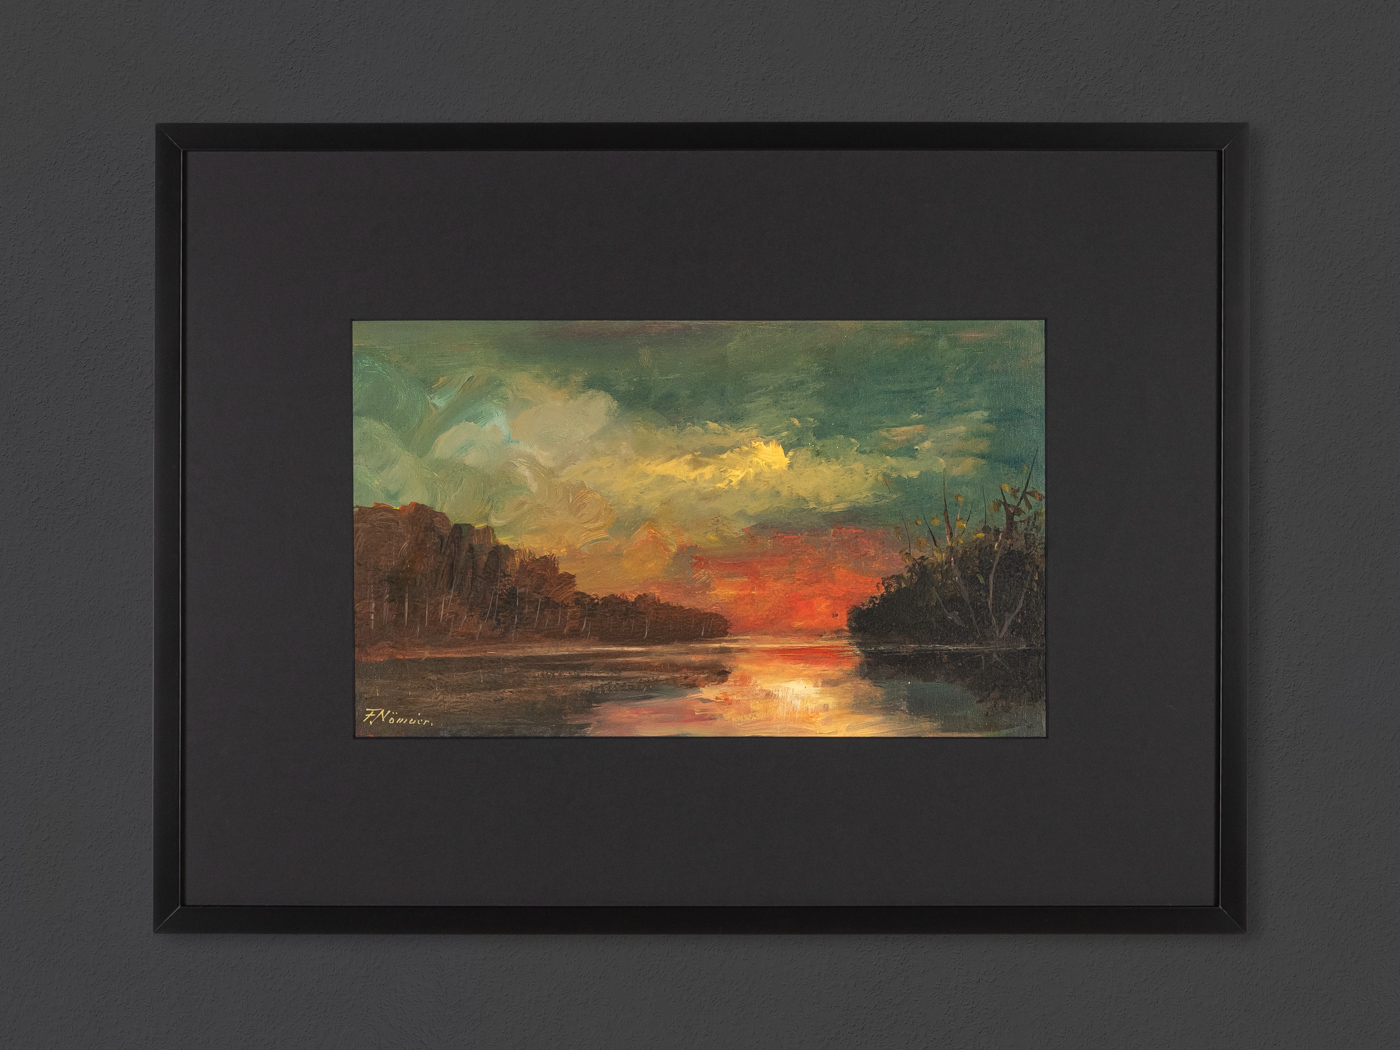 River Landscape, Oil on Linen, 78 x 58 cm